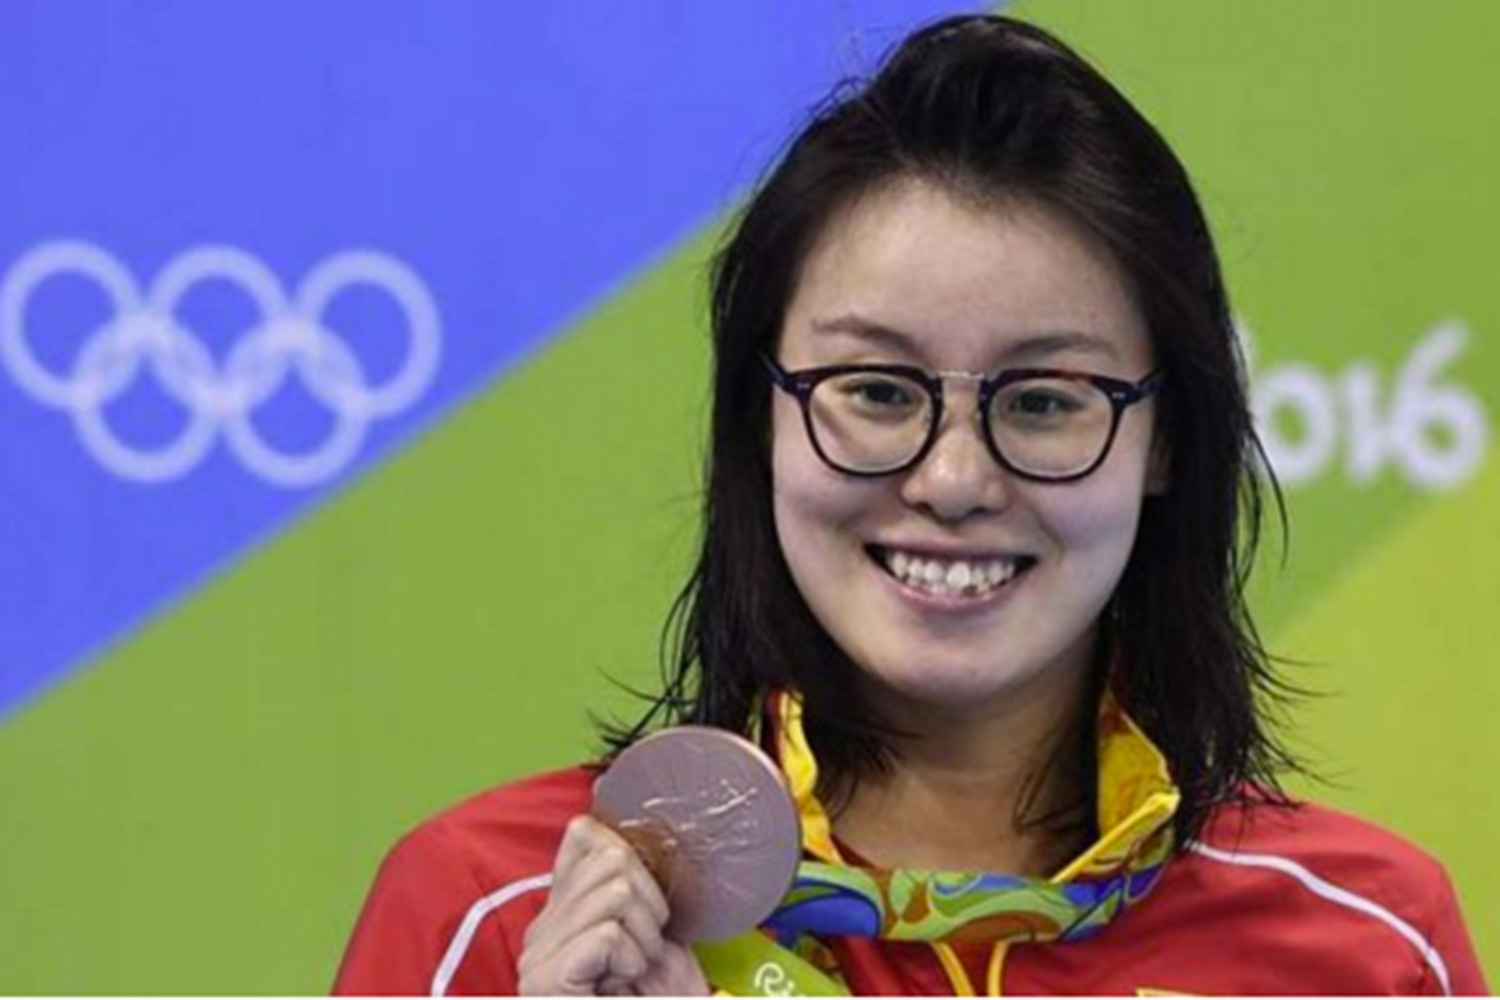 La nadadora china que ha roto el tabú sobre tener la regla durante los JJOO